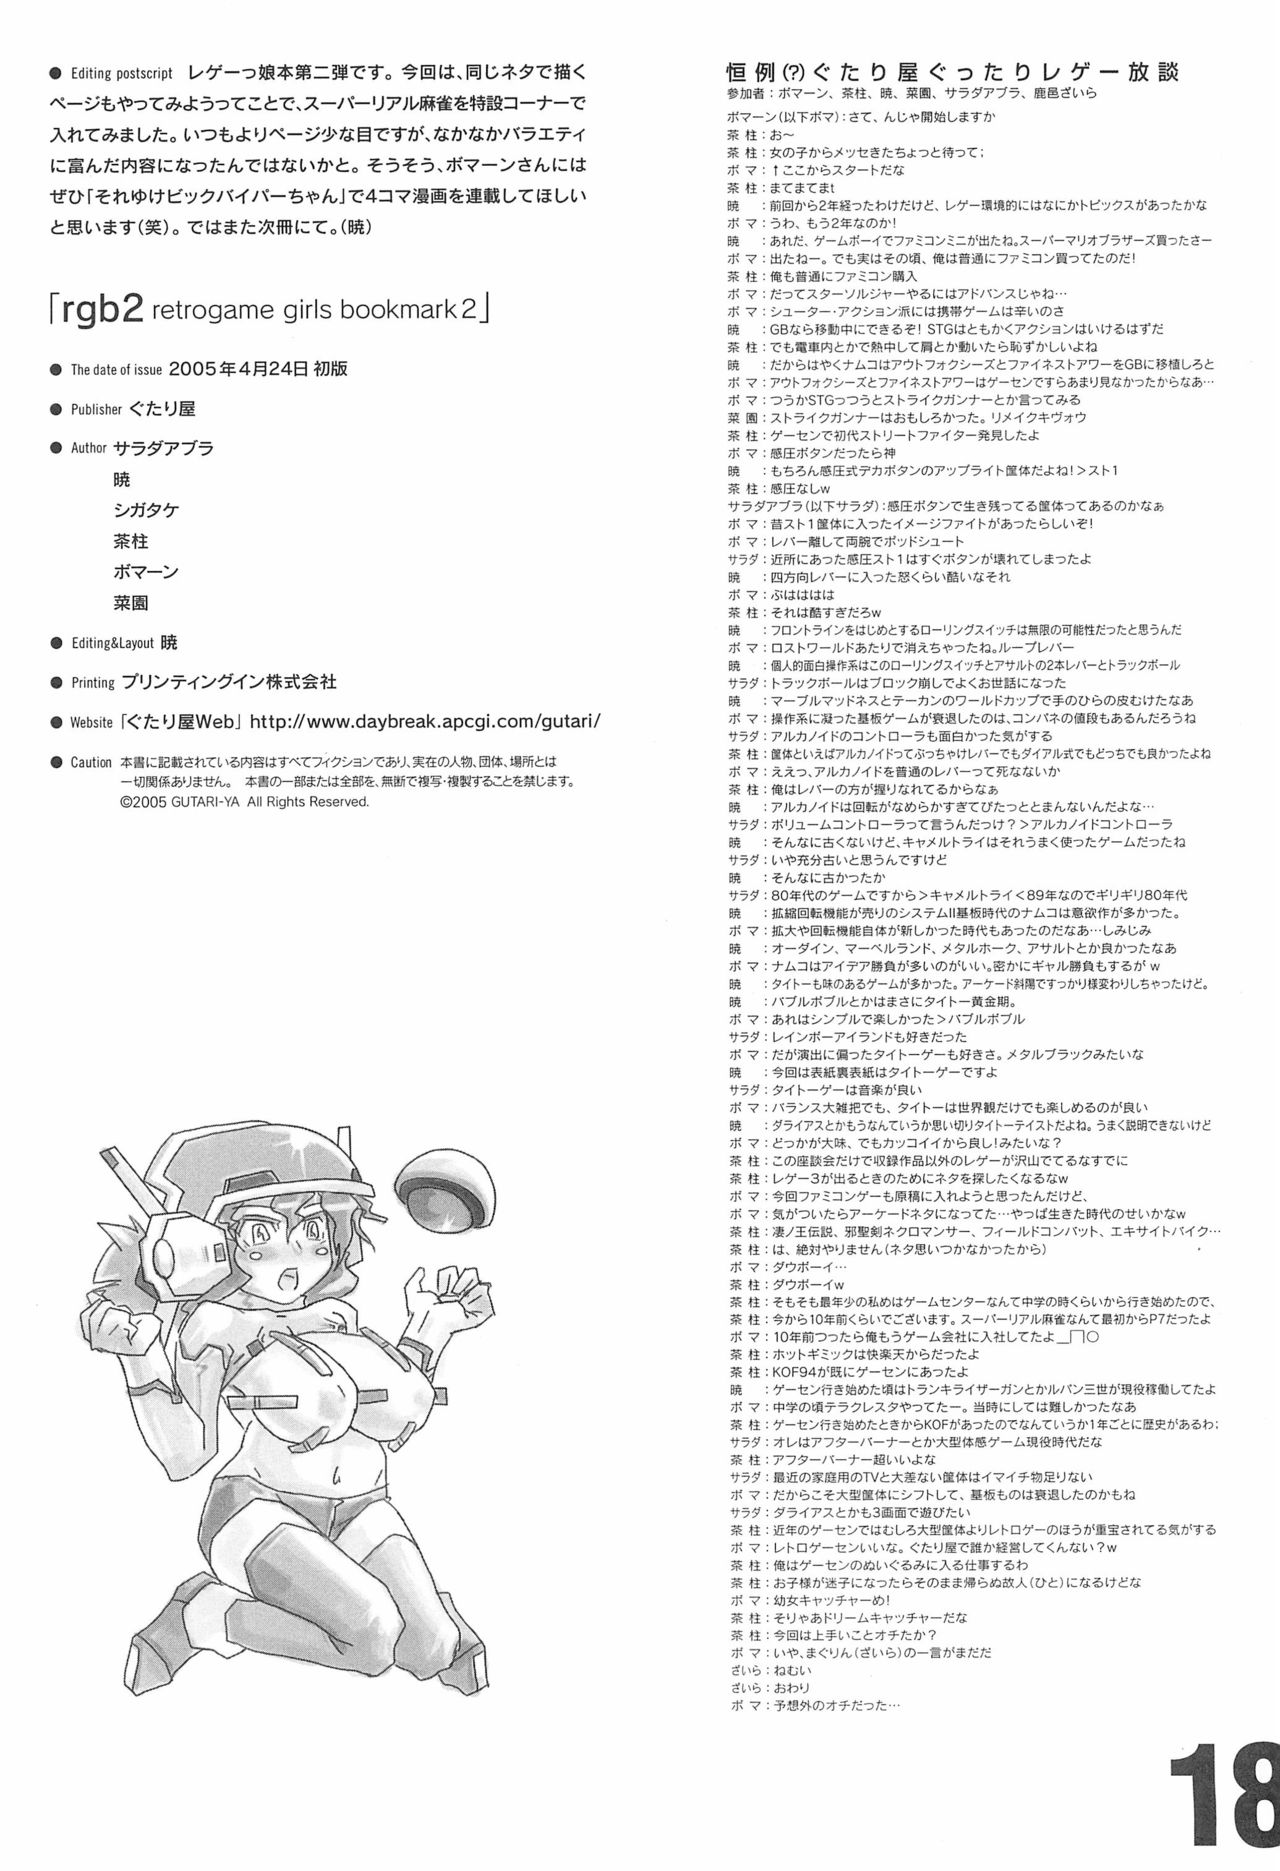 (Cレヴォ37) [ぐたり屋 (よろず)] rgb 2 retrogame girls bookmark 2 (よろず)